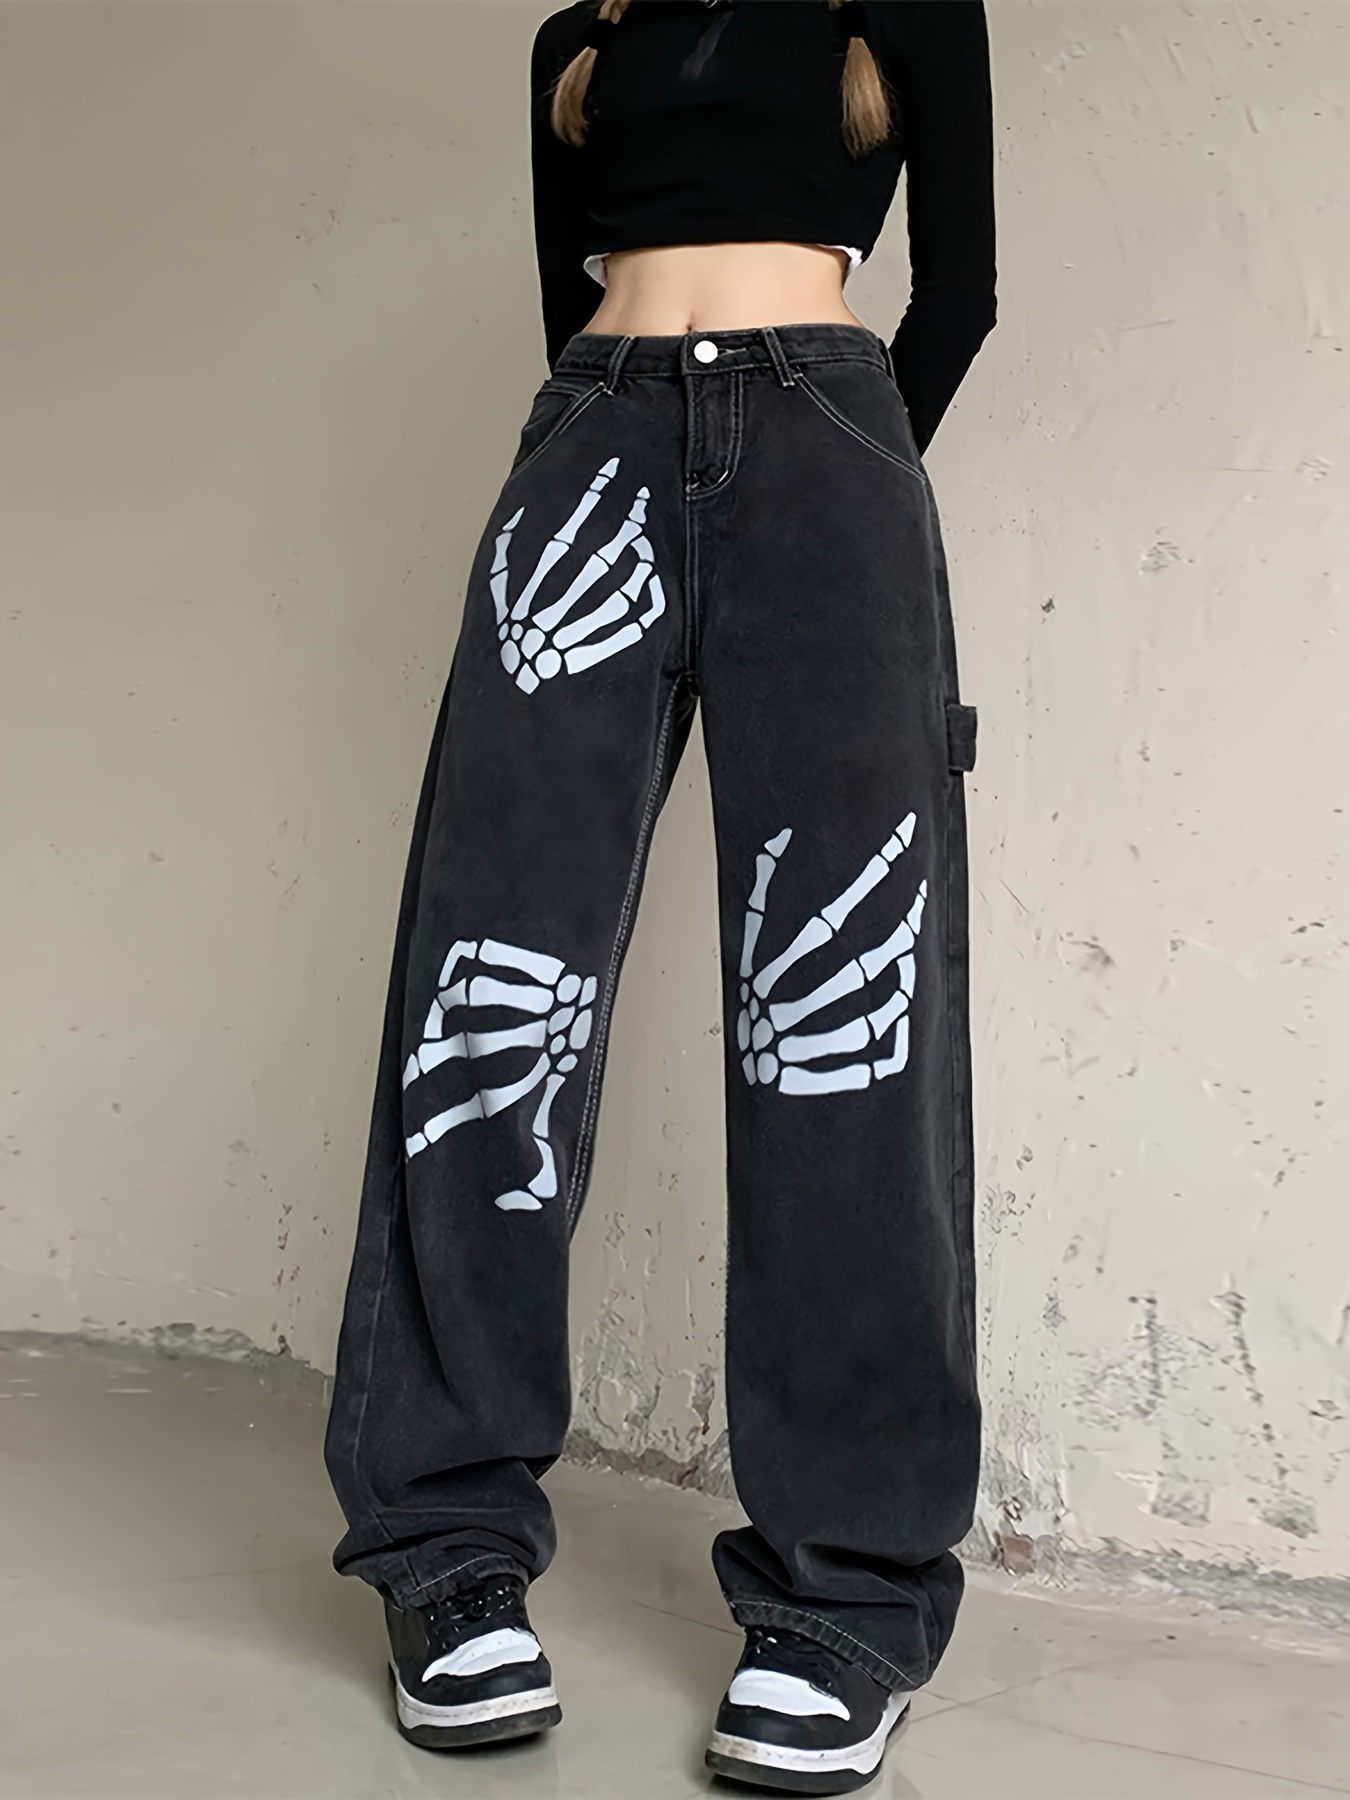 Womens Gothic Skeleton Bone Hands Printed Halloween Ladies Pants